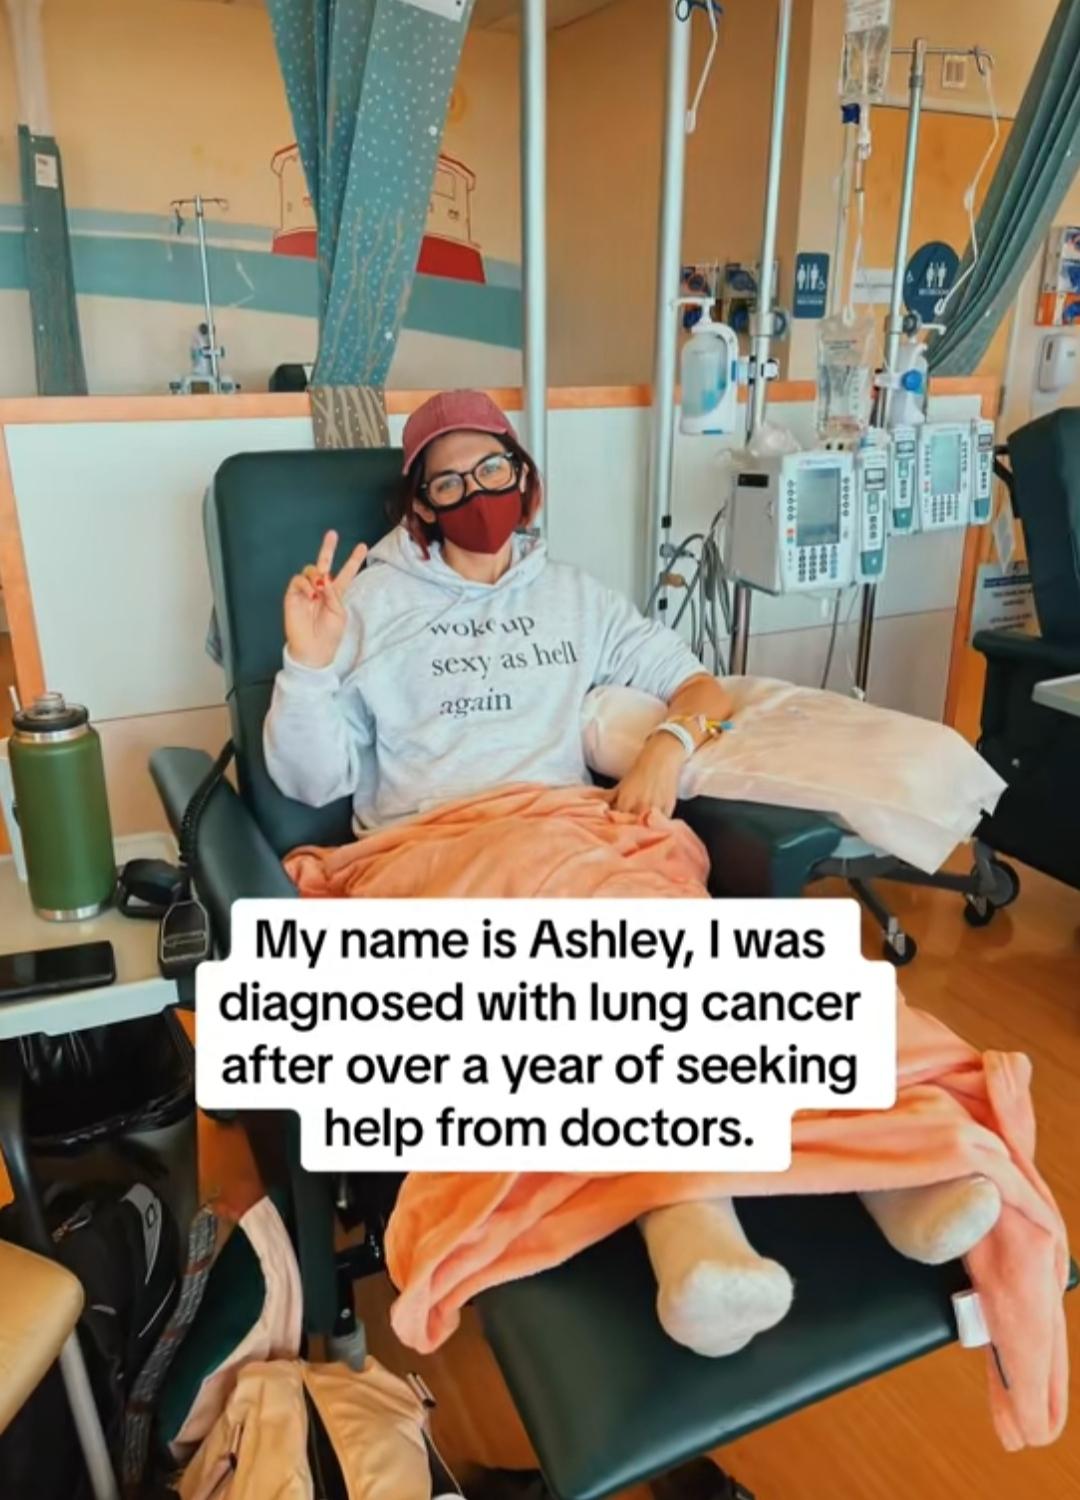 Ashley radí ľudom, aby sa nebáli vyjadriť obavy o ich zdravie.